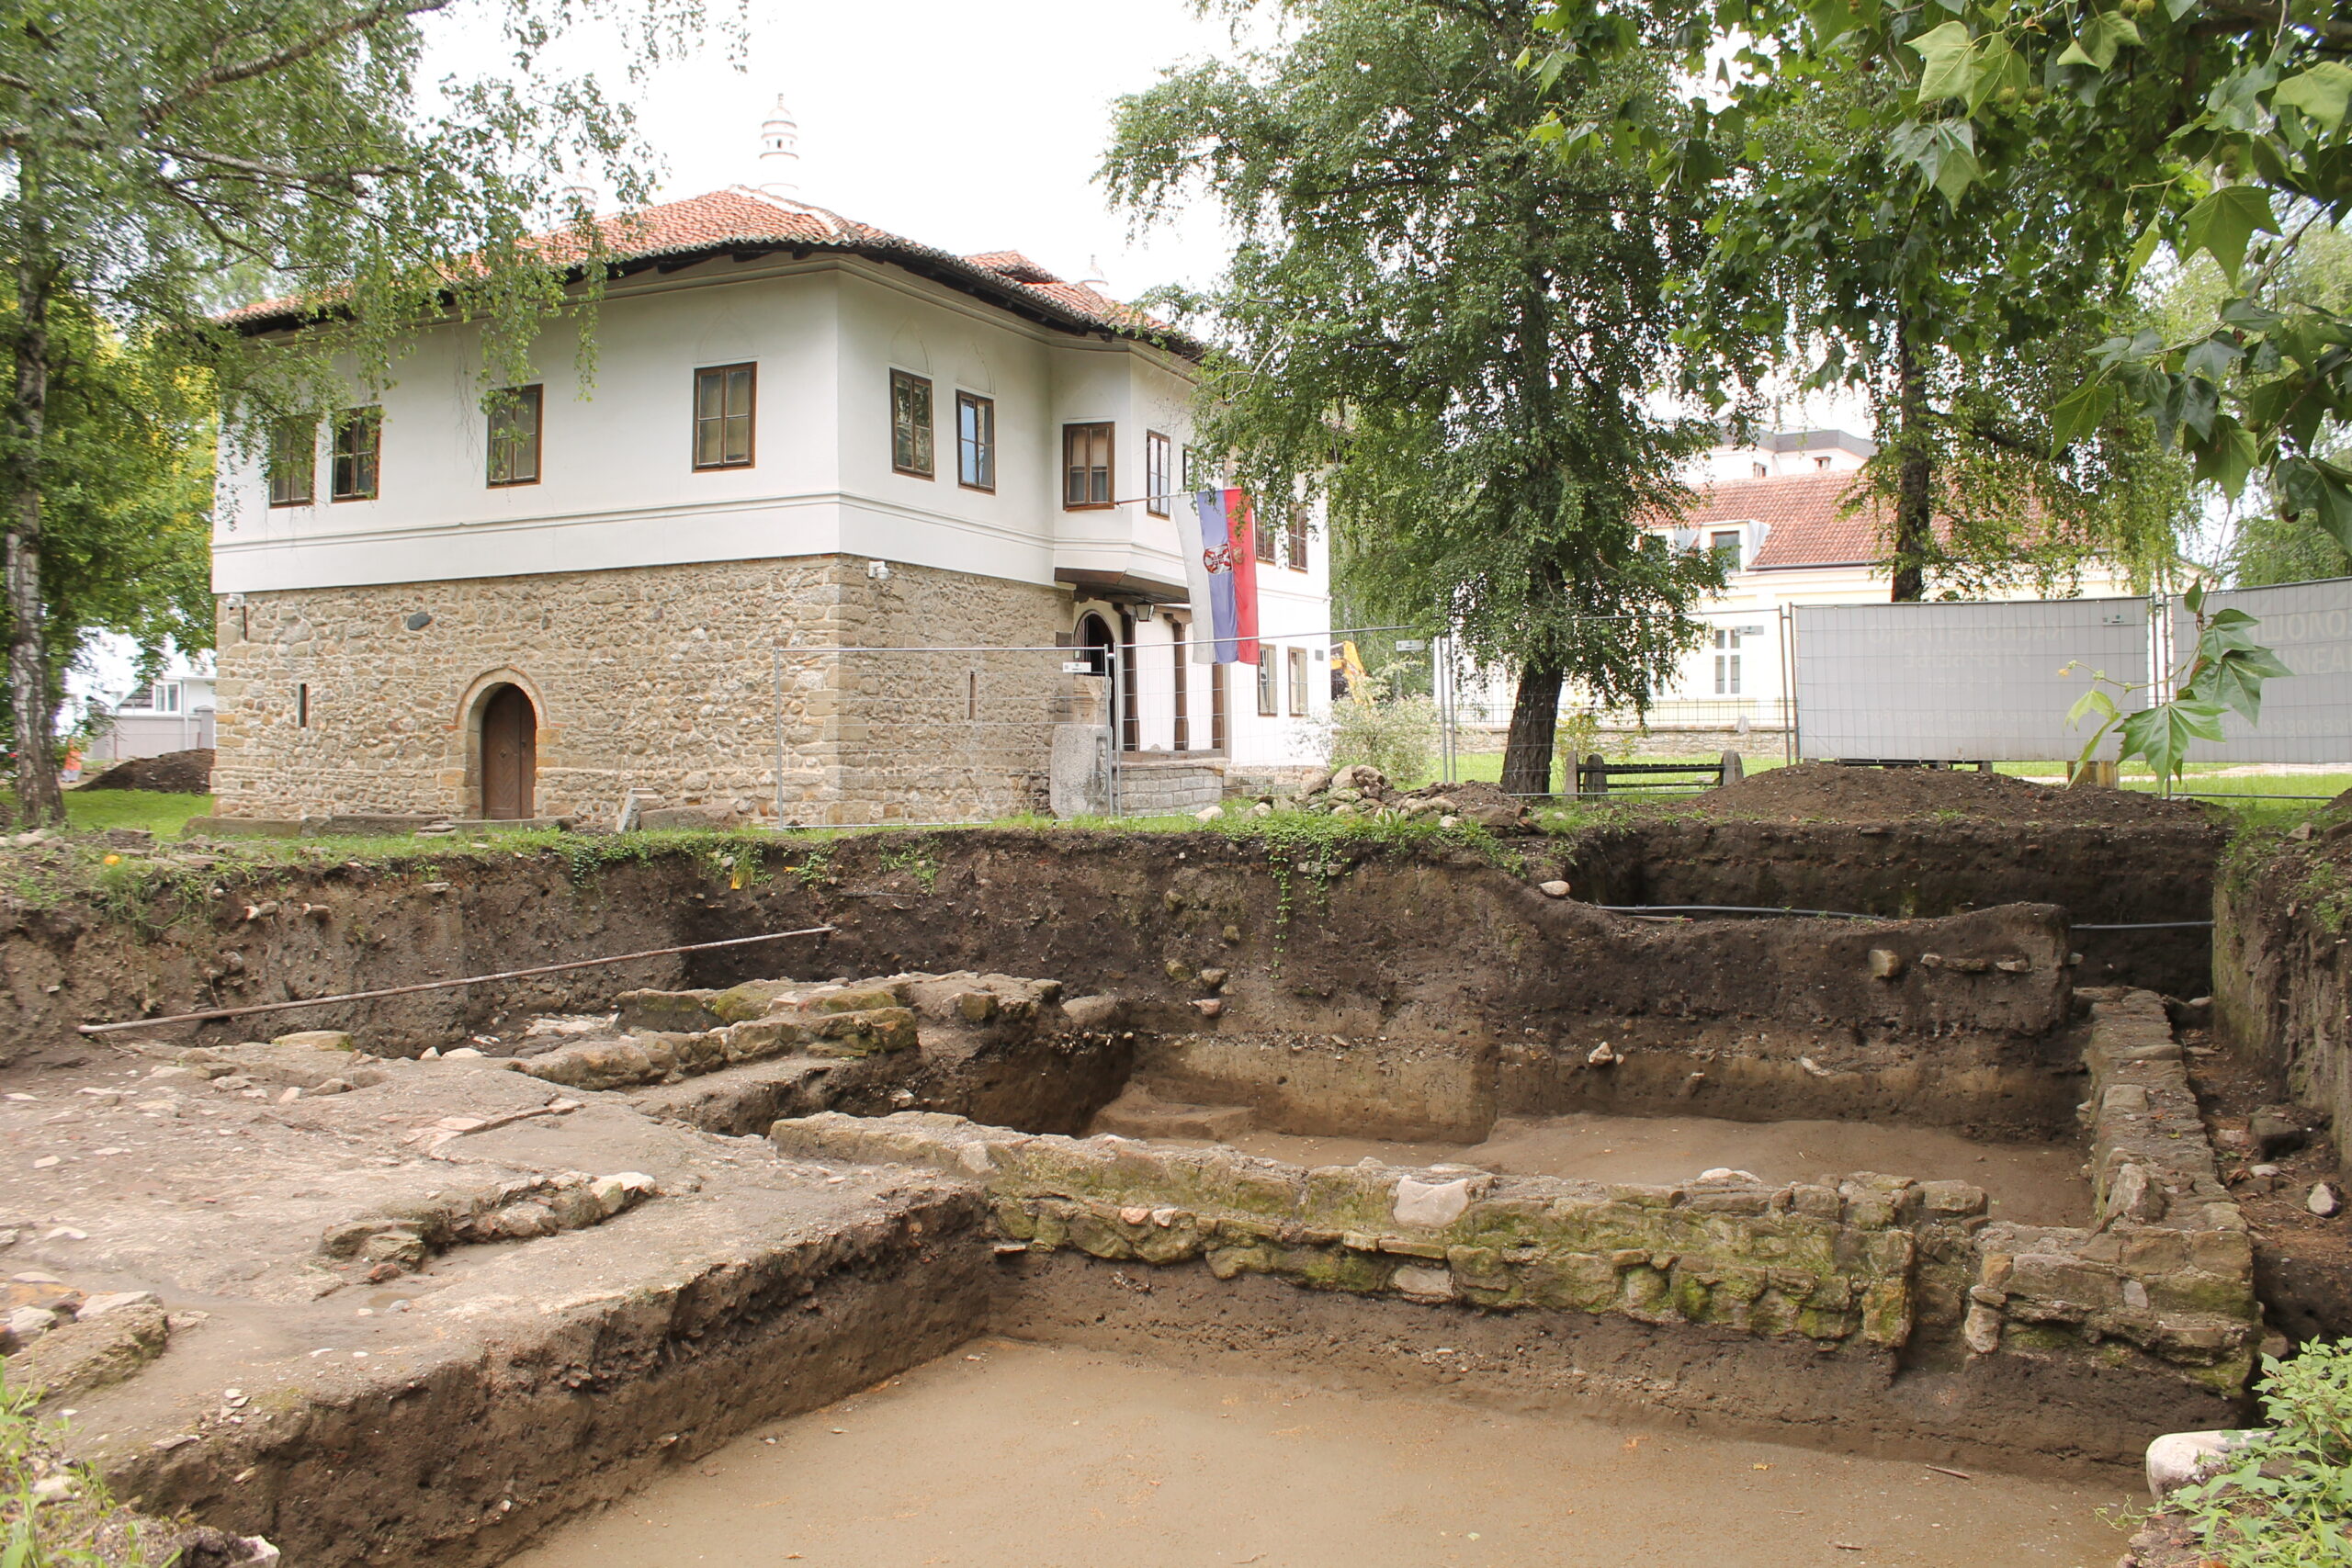 Grad ispod grada: arheološka istraživanja u dvorištu Narodnog muzeja u Čačku donela važno otkriće